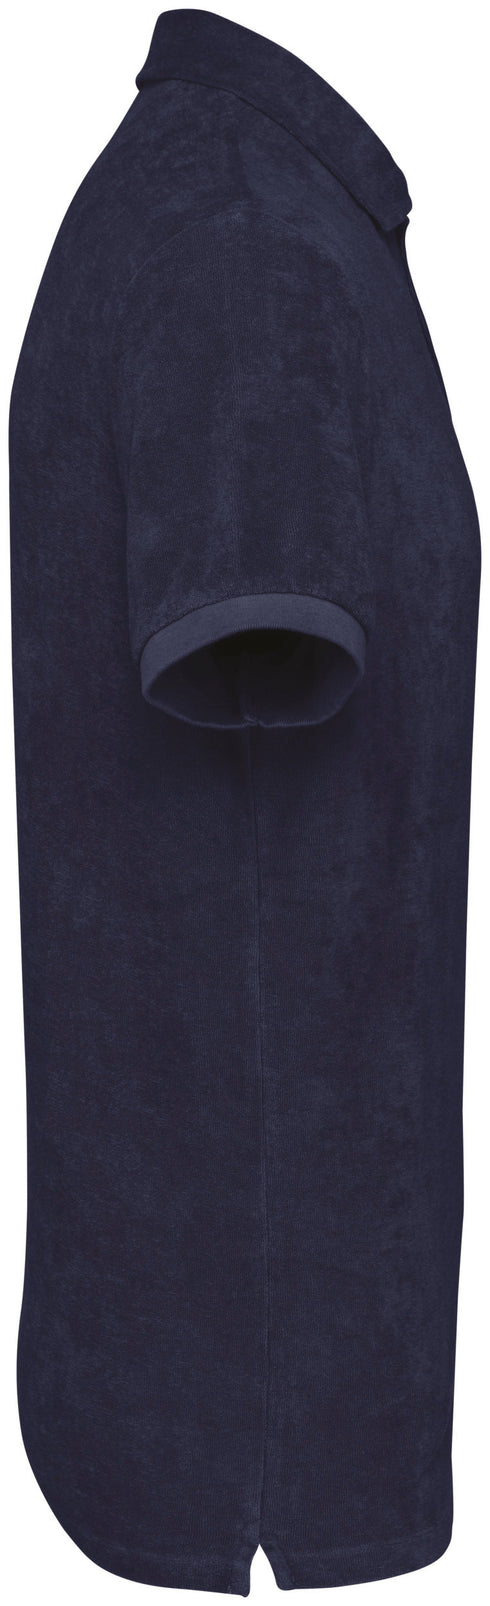 Polo de toalla de rizo para hombre - Hecho en Portugal - 210 g/m² - NS227